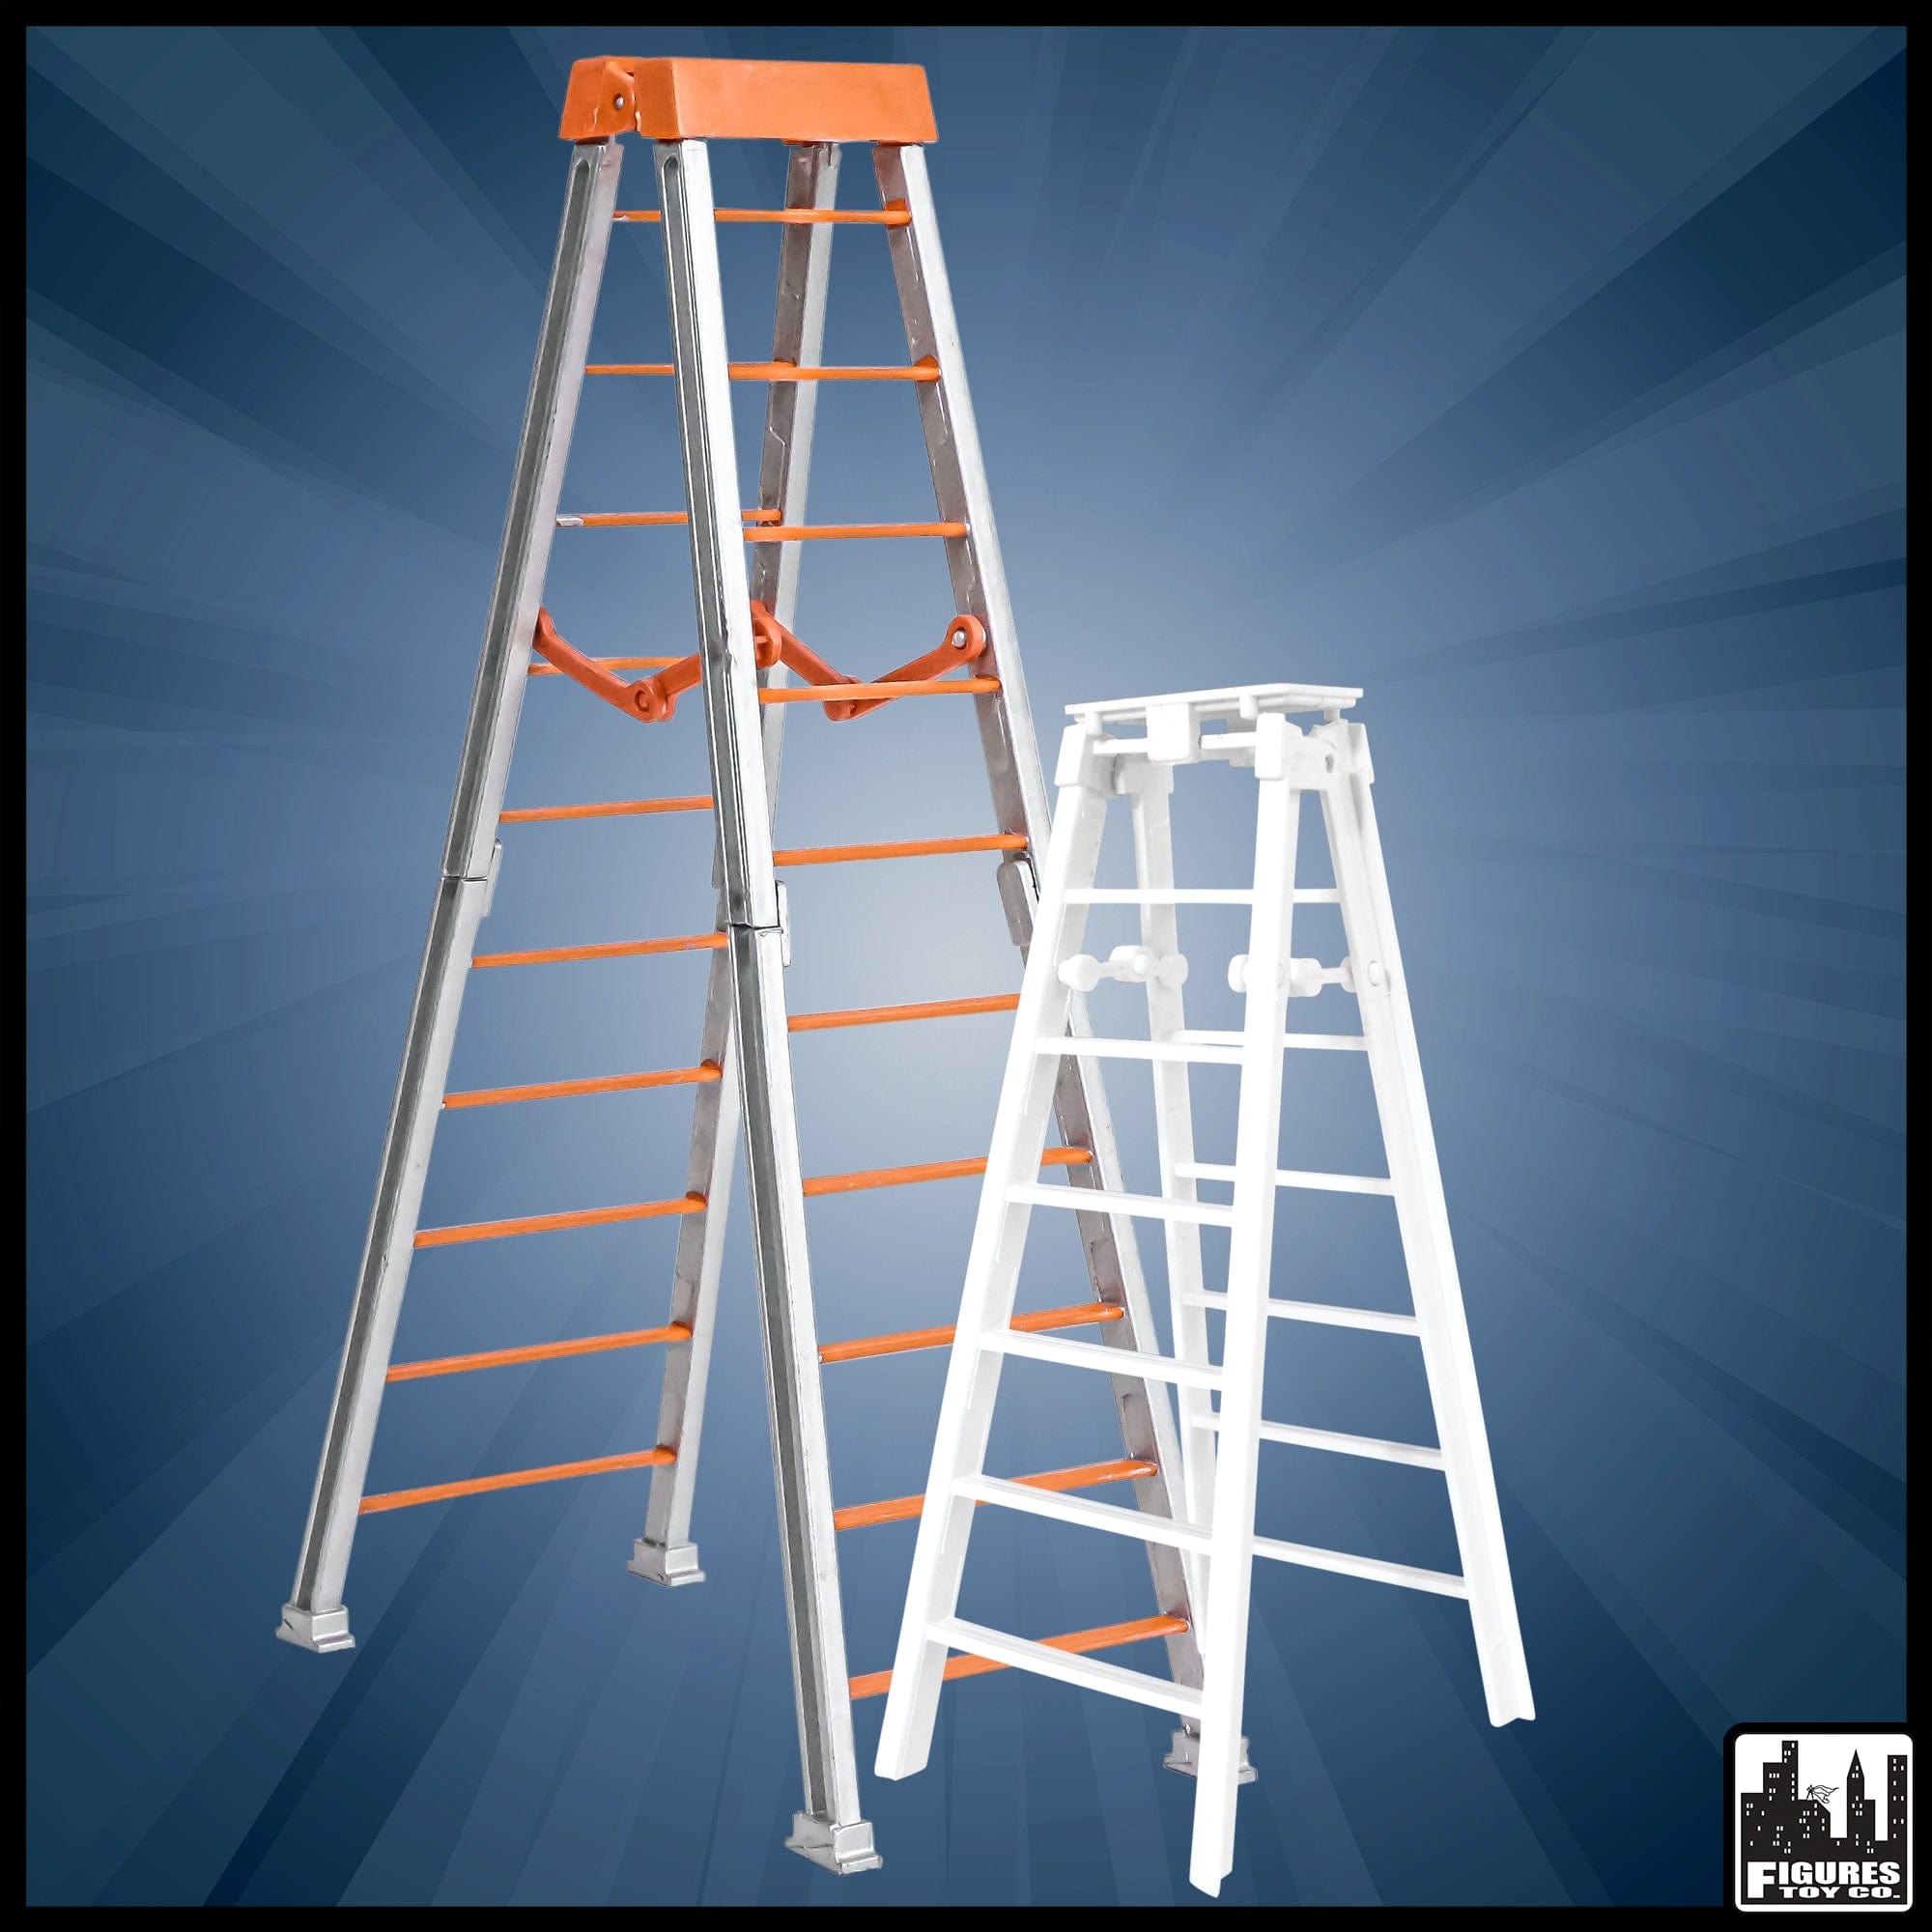 10 Inch Orange Breakable & 7 Inch Regular White Ladder For Wrestling Figures